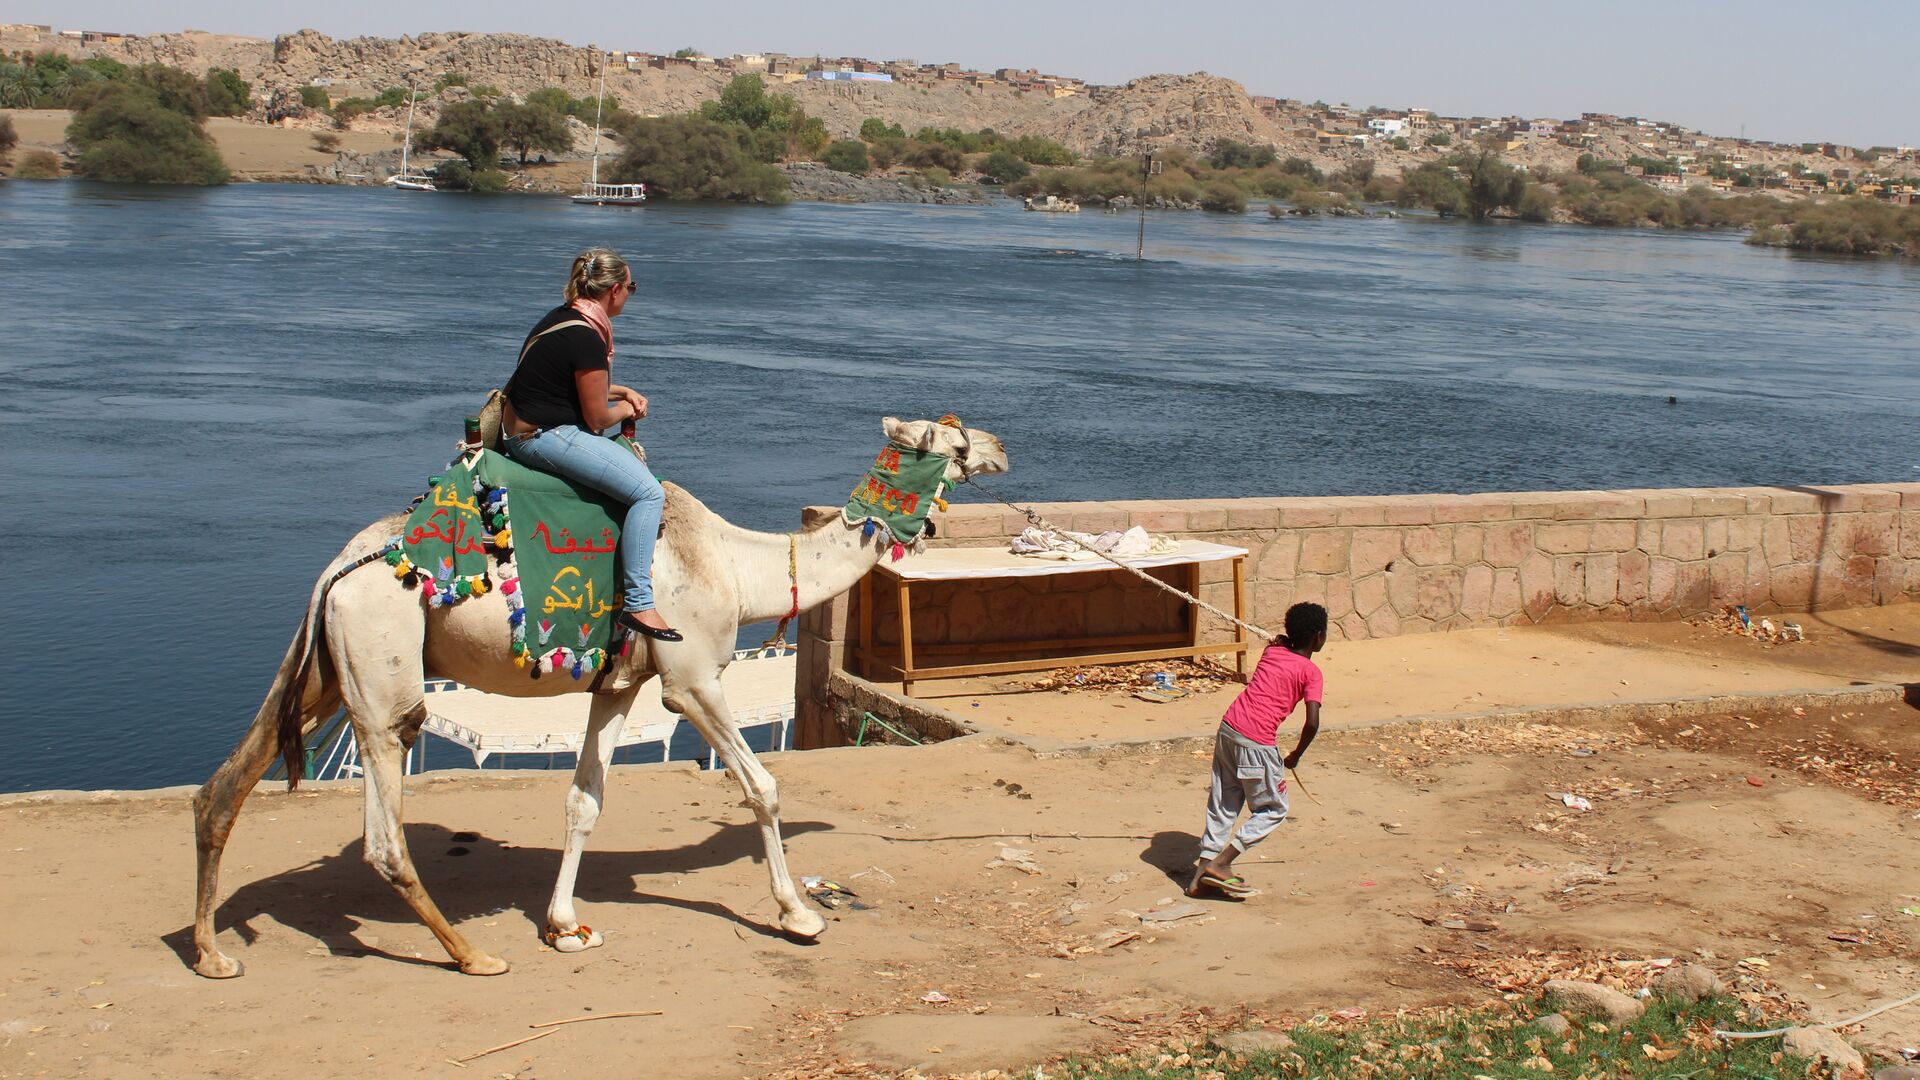 Местный житель катает туристку вдоль Нила на верблюде - РИА Новости, 1920, 05.09.2020